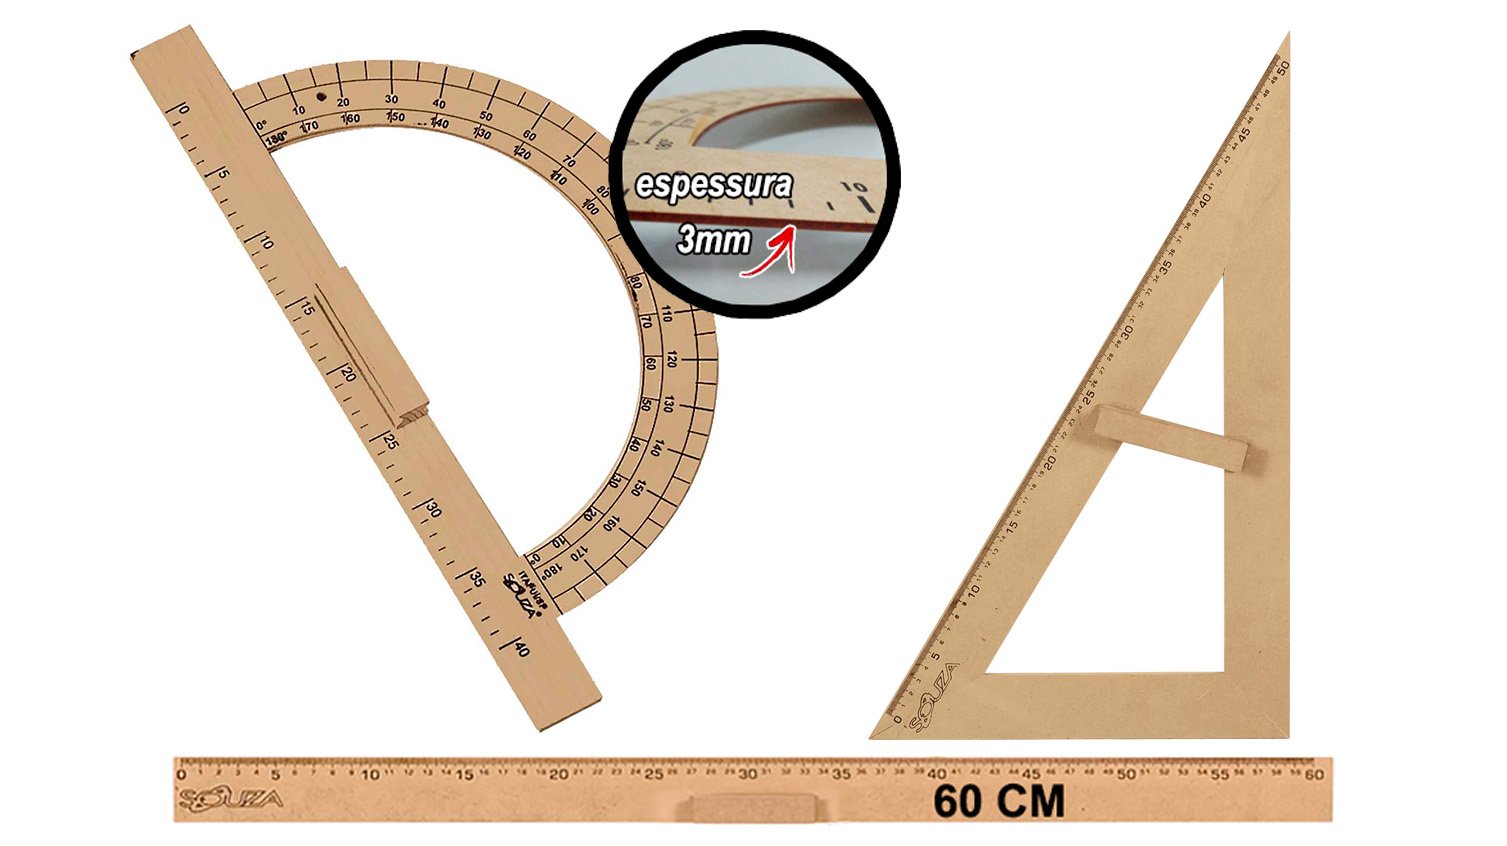 Kit Geométrico do Professor Mdf Com Régua 60 cm 1 Transferidor 180 Graus e 1 Esquadro 30º/60º Graus  - 1